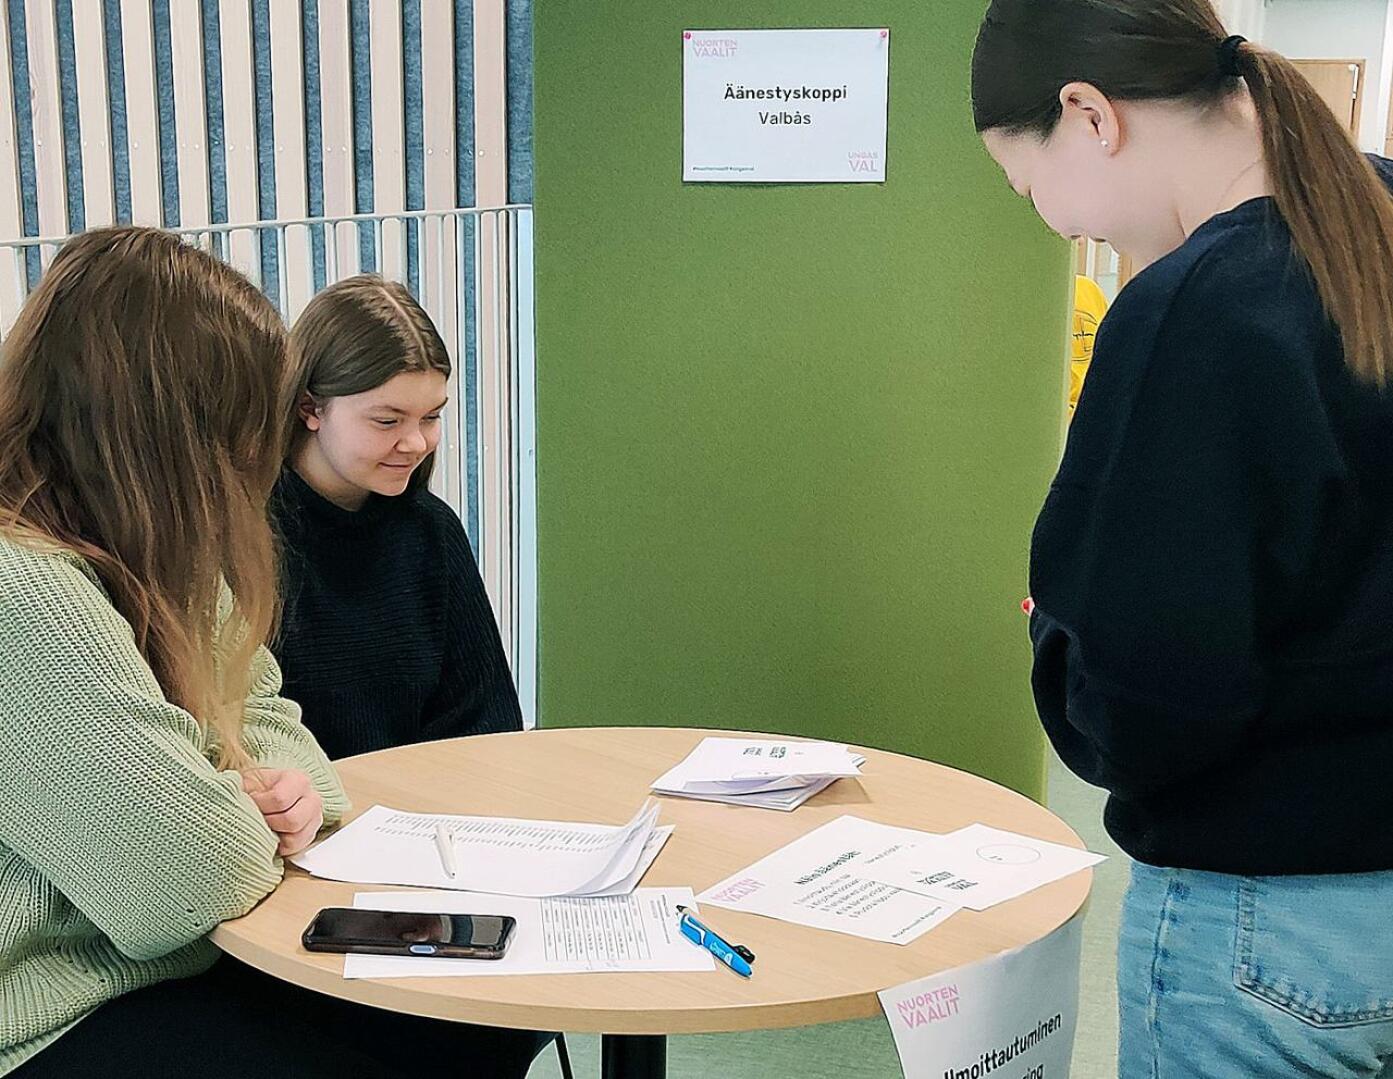 Haapaveden lukiolaiset äänestivät nuorisovaaleissa innokkaasti. Äänestysprosentti kohosi yli 78:n. Kuvassa vaalitoimistijat  Sanni Pyhälä ja Veera Aho. Äänestyksen käynnisti  Juulia Ollanketo.